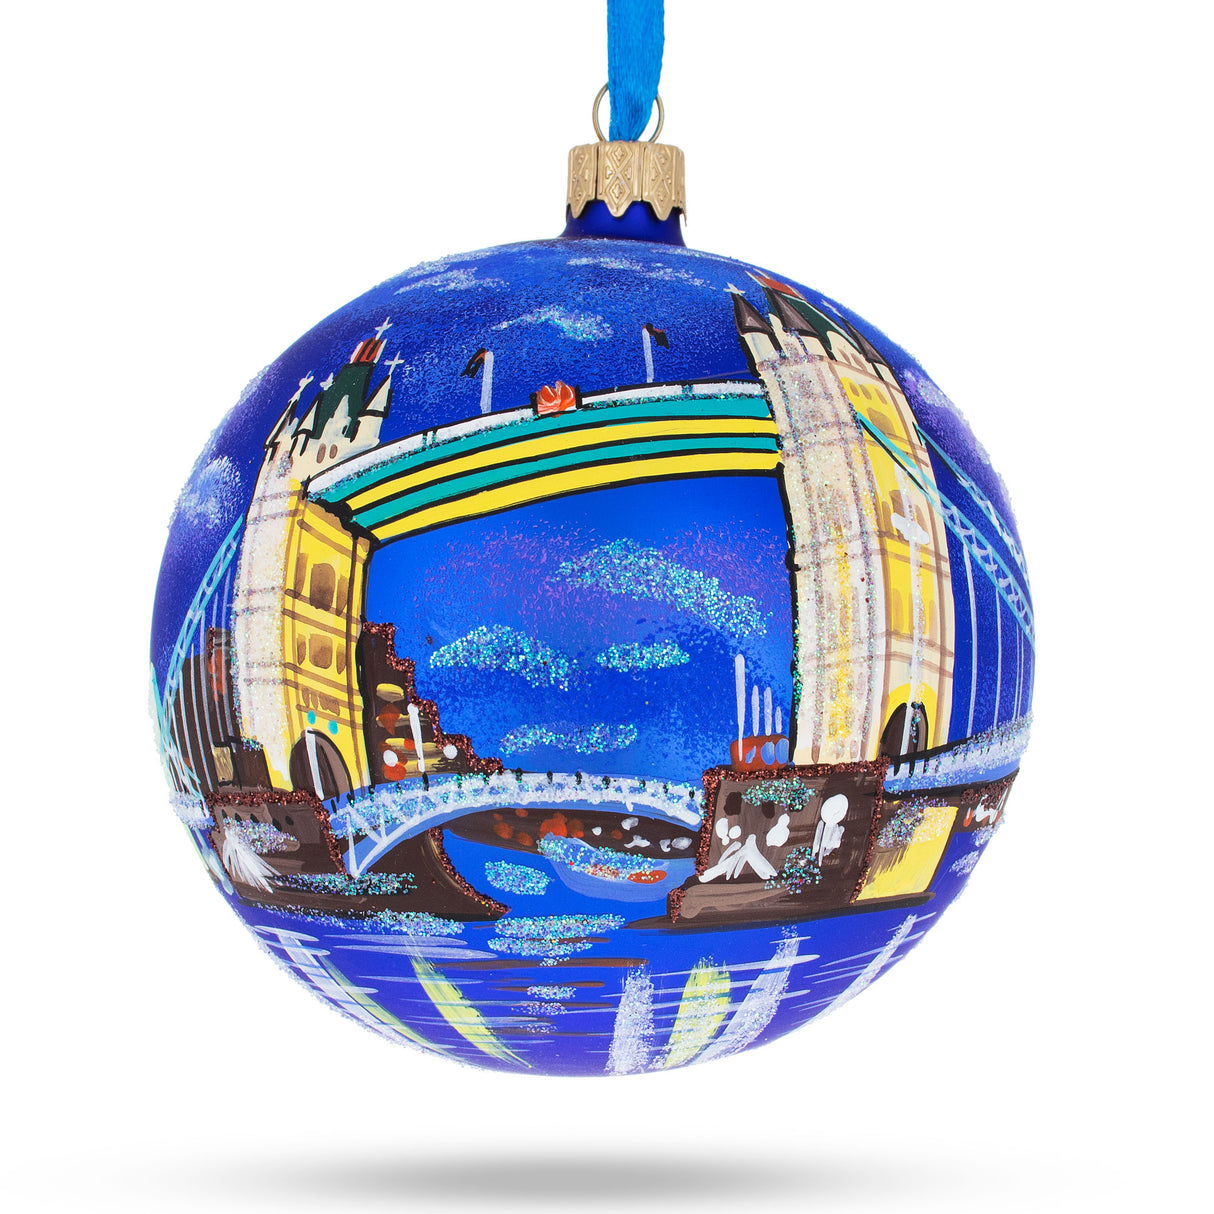 Glass London Bridge, England, United Kingdom Glass Ornament 4 Inches in Multi color Round